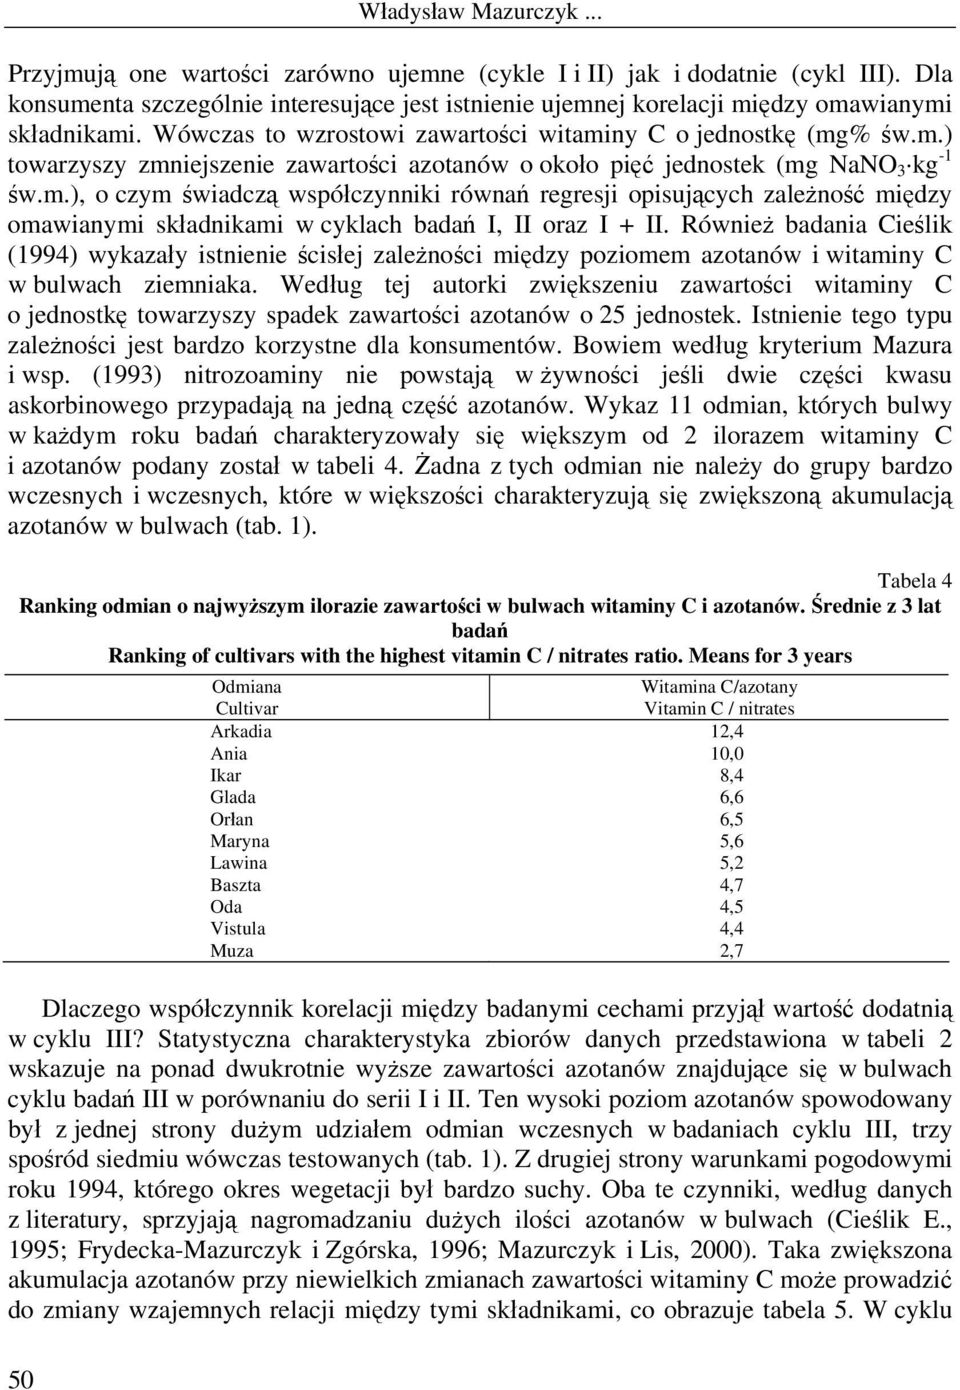 Również badania Cieślik (1994) wykazały istnienie ścisłej zależności między poziomem azotanów i witaminy C w bulwach ziemniaka.